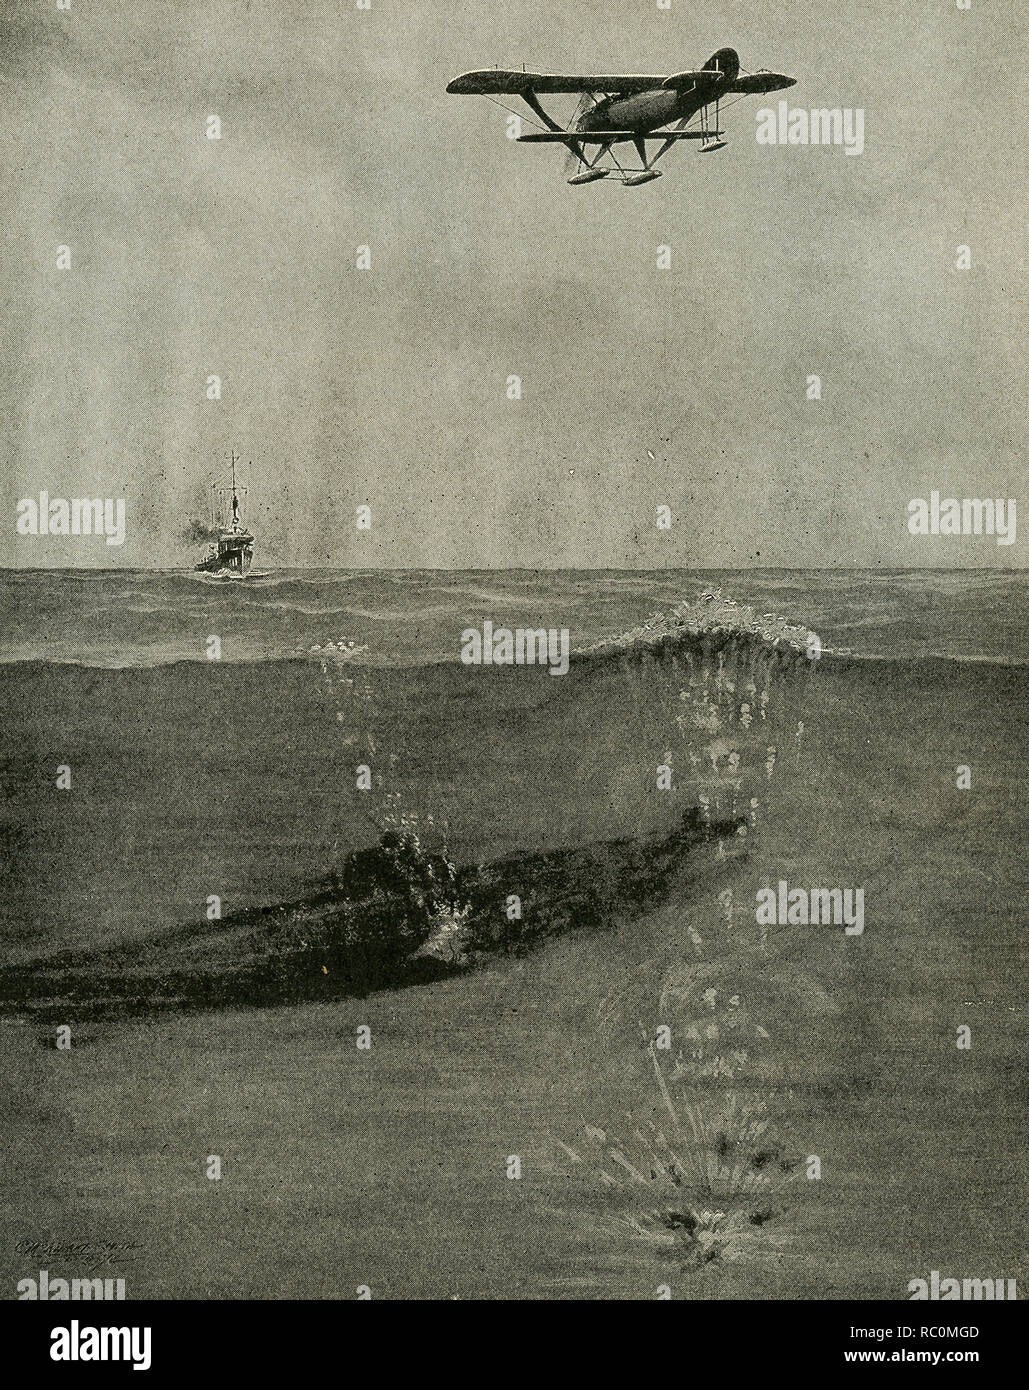 La légende de cette image qui date de 1922 se lit comme suit : "Une bombe de profondeur n'aura pas vraiment besoin d'atteindre un sous-marin pour la détruire." Banque D'Images